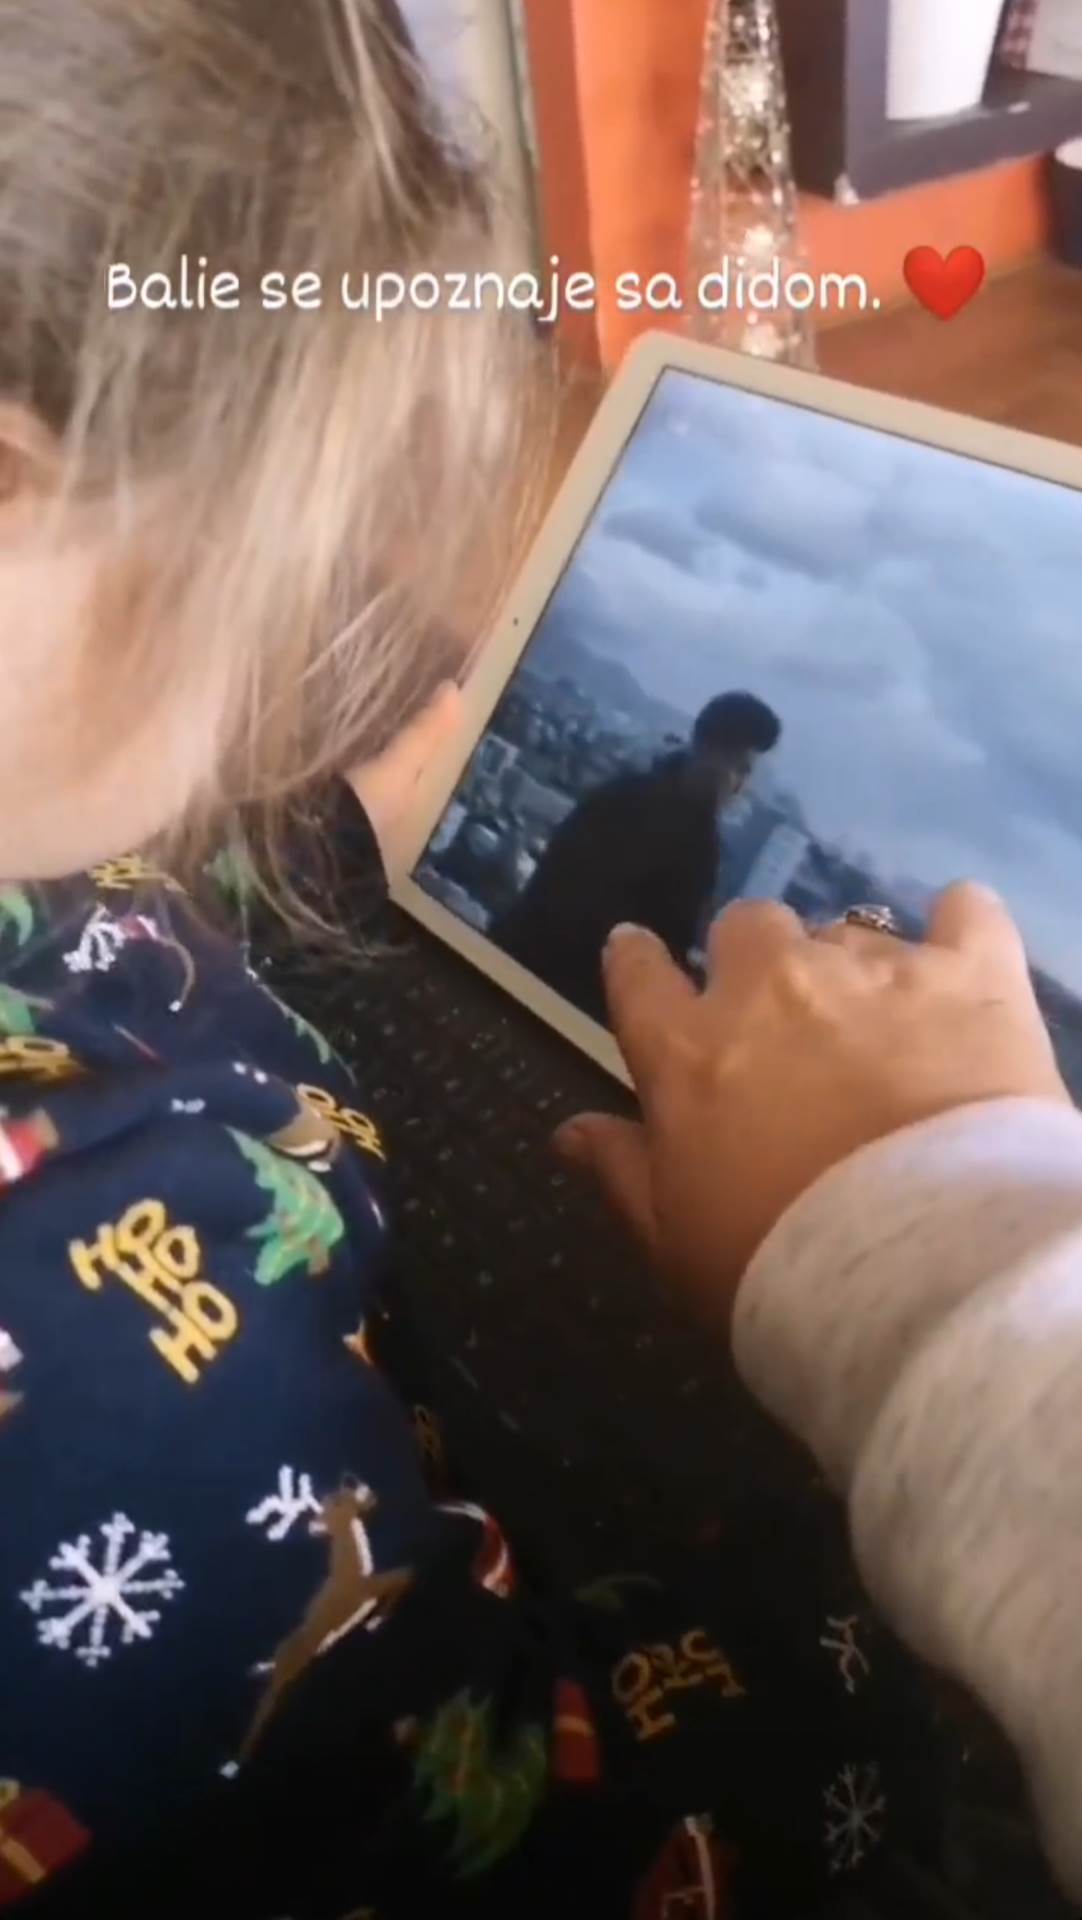 Danijela Dvornik podijelila video na kojem se Balie upoznaje s didom Dinom